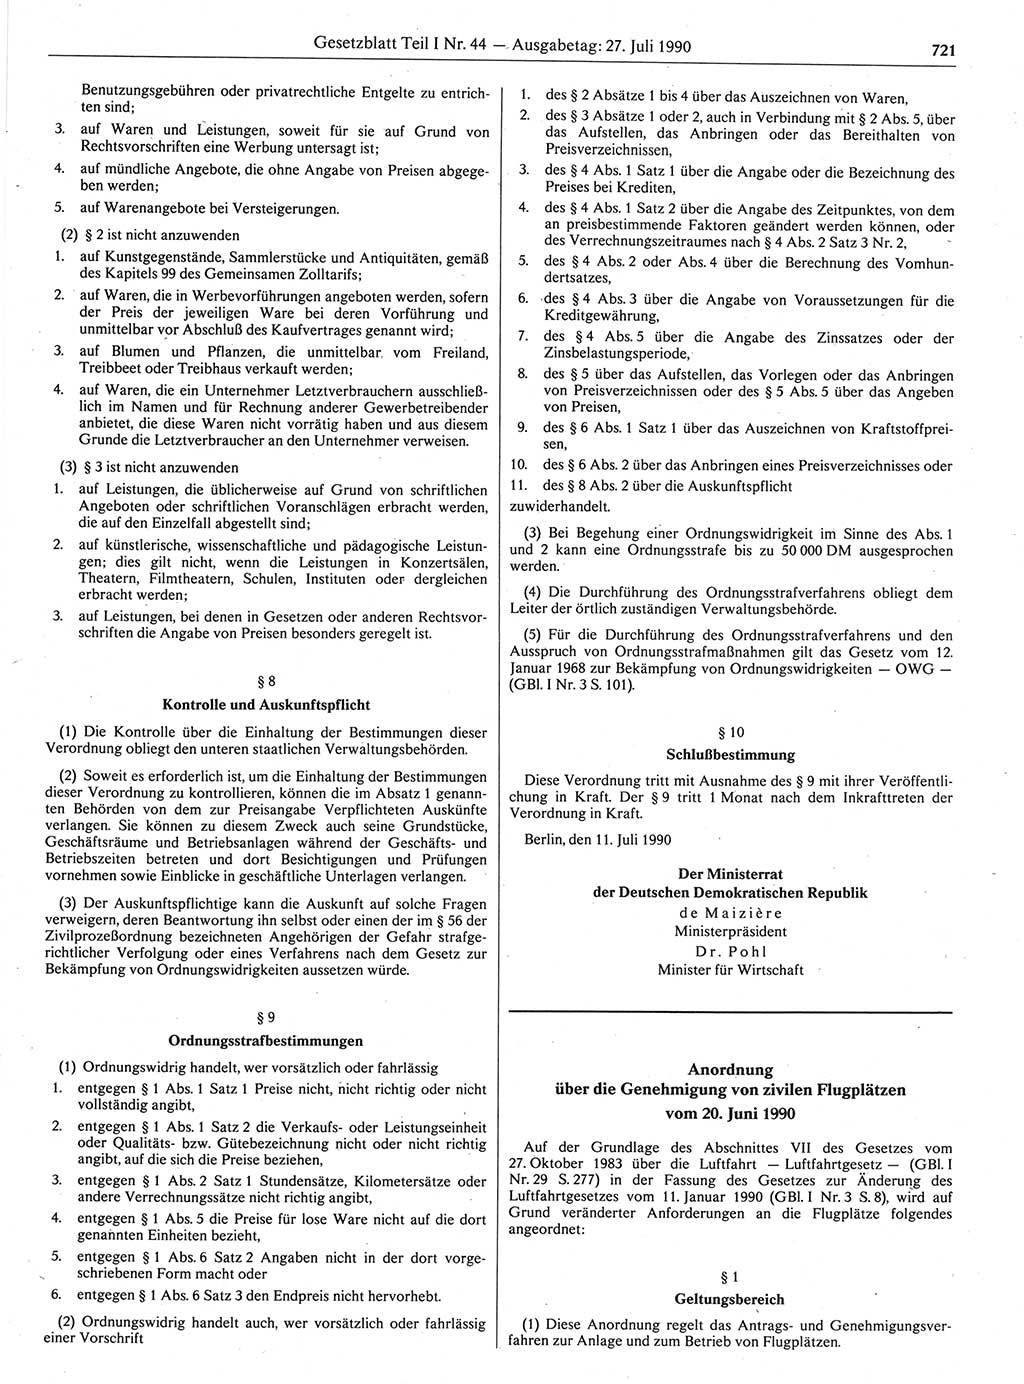 Gesetzblatt (GBl.) der Deutschen Demokratischen Republik (DDR) Teil Ⅰ 1990, Seite 721 (GBl. DDR Ⅰ 1990, S. 721)